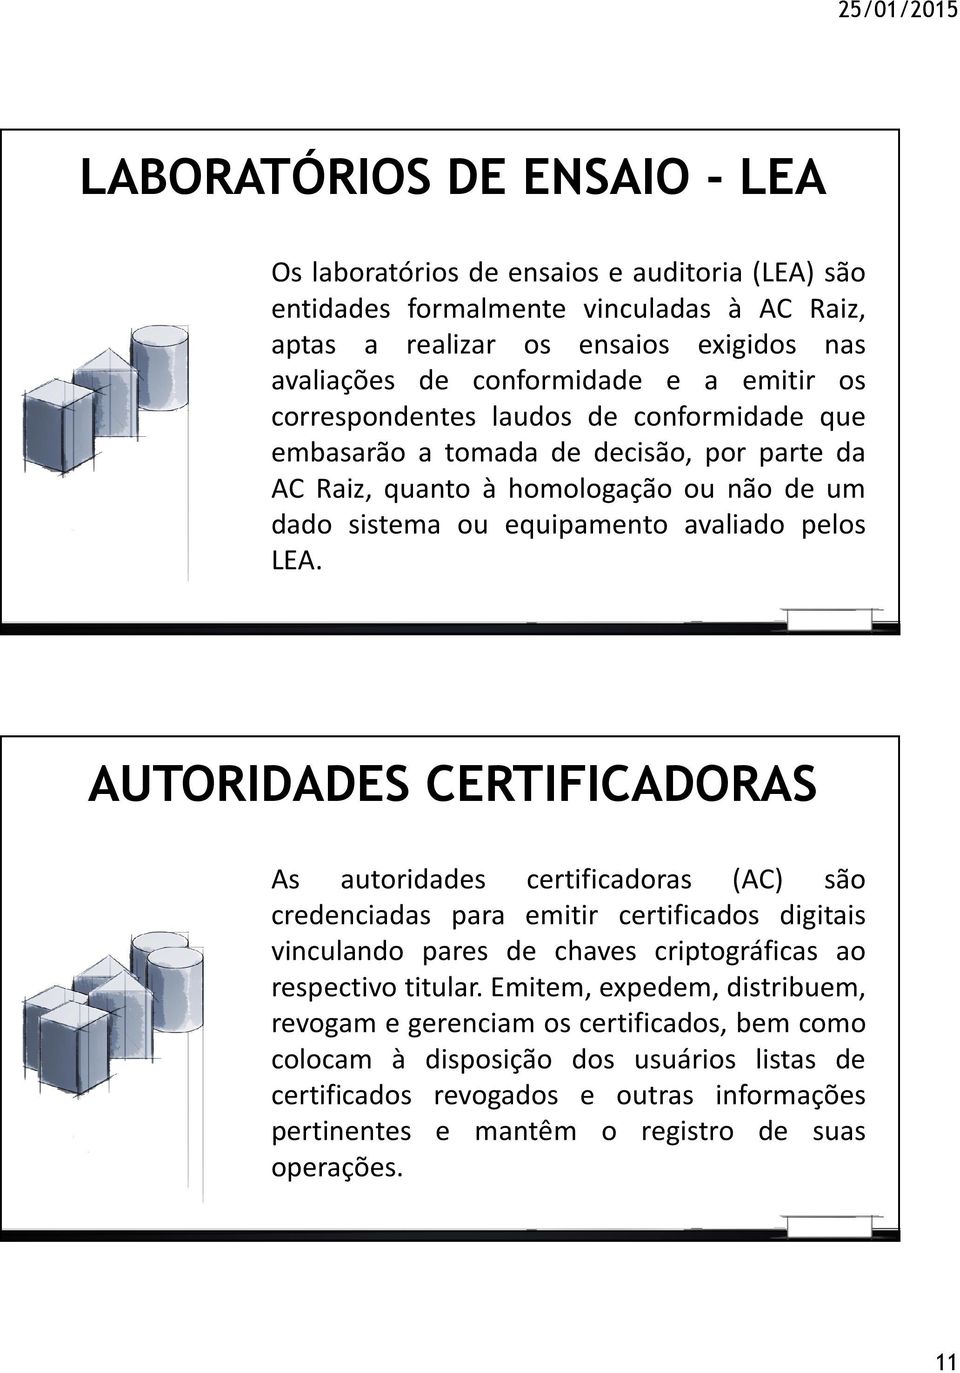 AUTORIDADES CERTIFICADORAS As autoridades certificadoras (AC) são credenciadas para emitir certificados digitais vinculando pares de chaves criptográficas ao respectivo titular.